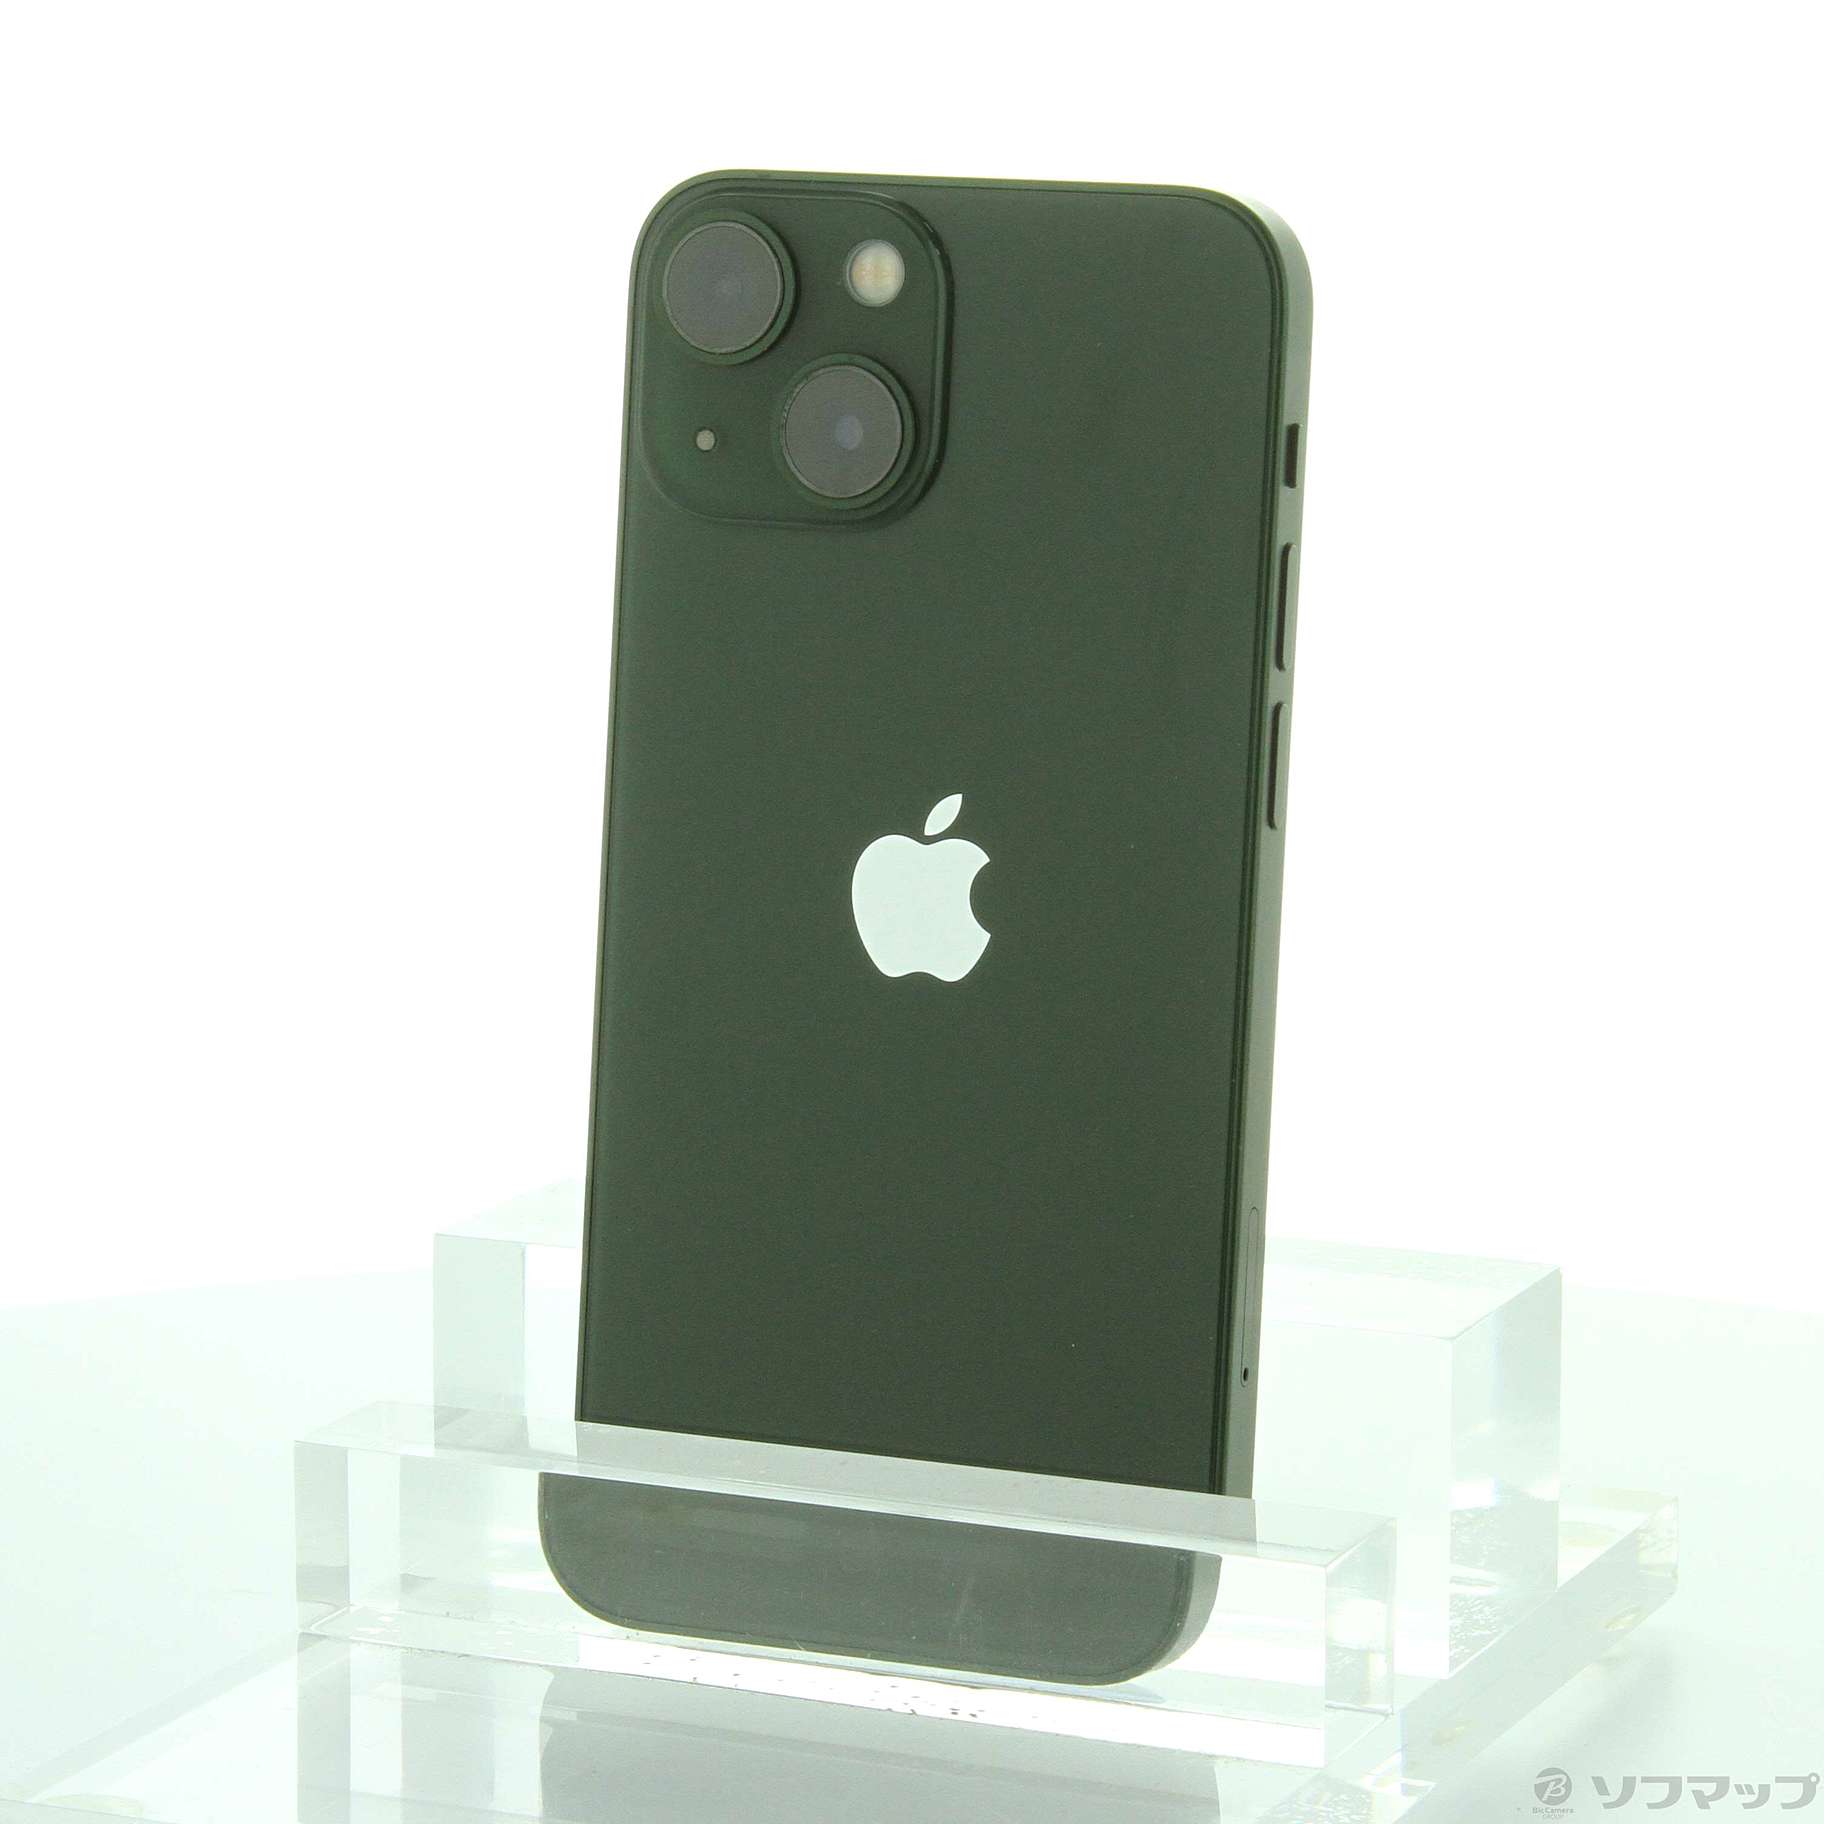 世界的に有名な 新品未開封 SIMフリー品 iPhone 13 mini 128GB Green MNFC3J A Apple  ストアレビュー投稿でプレゼント中